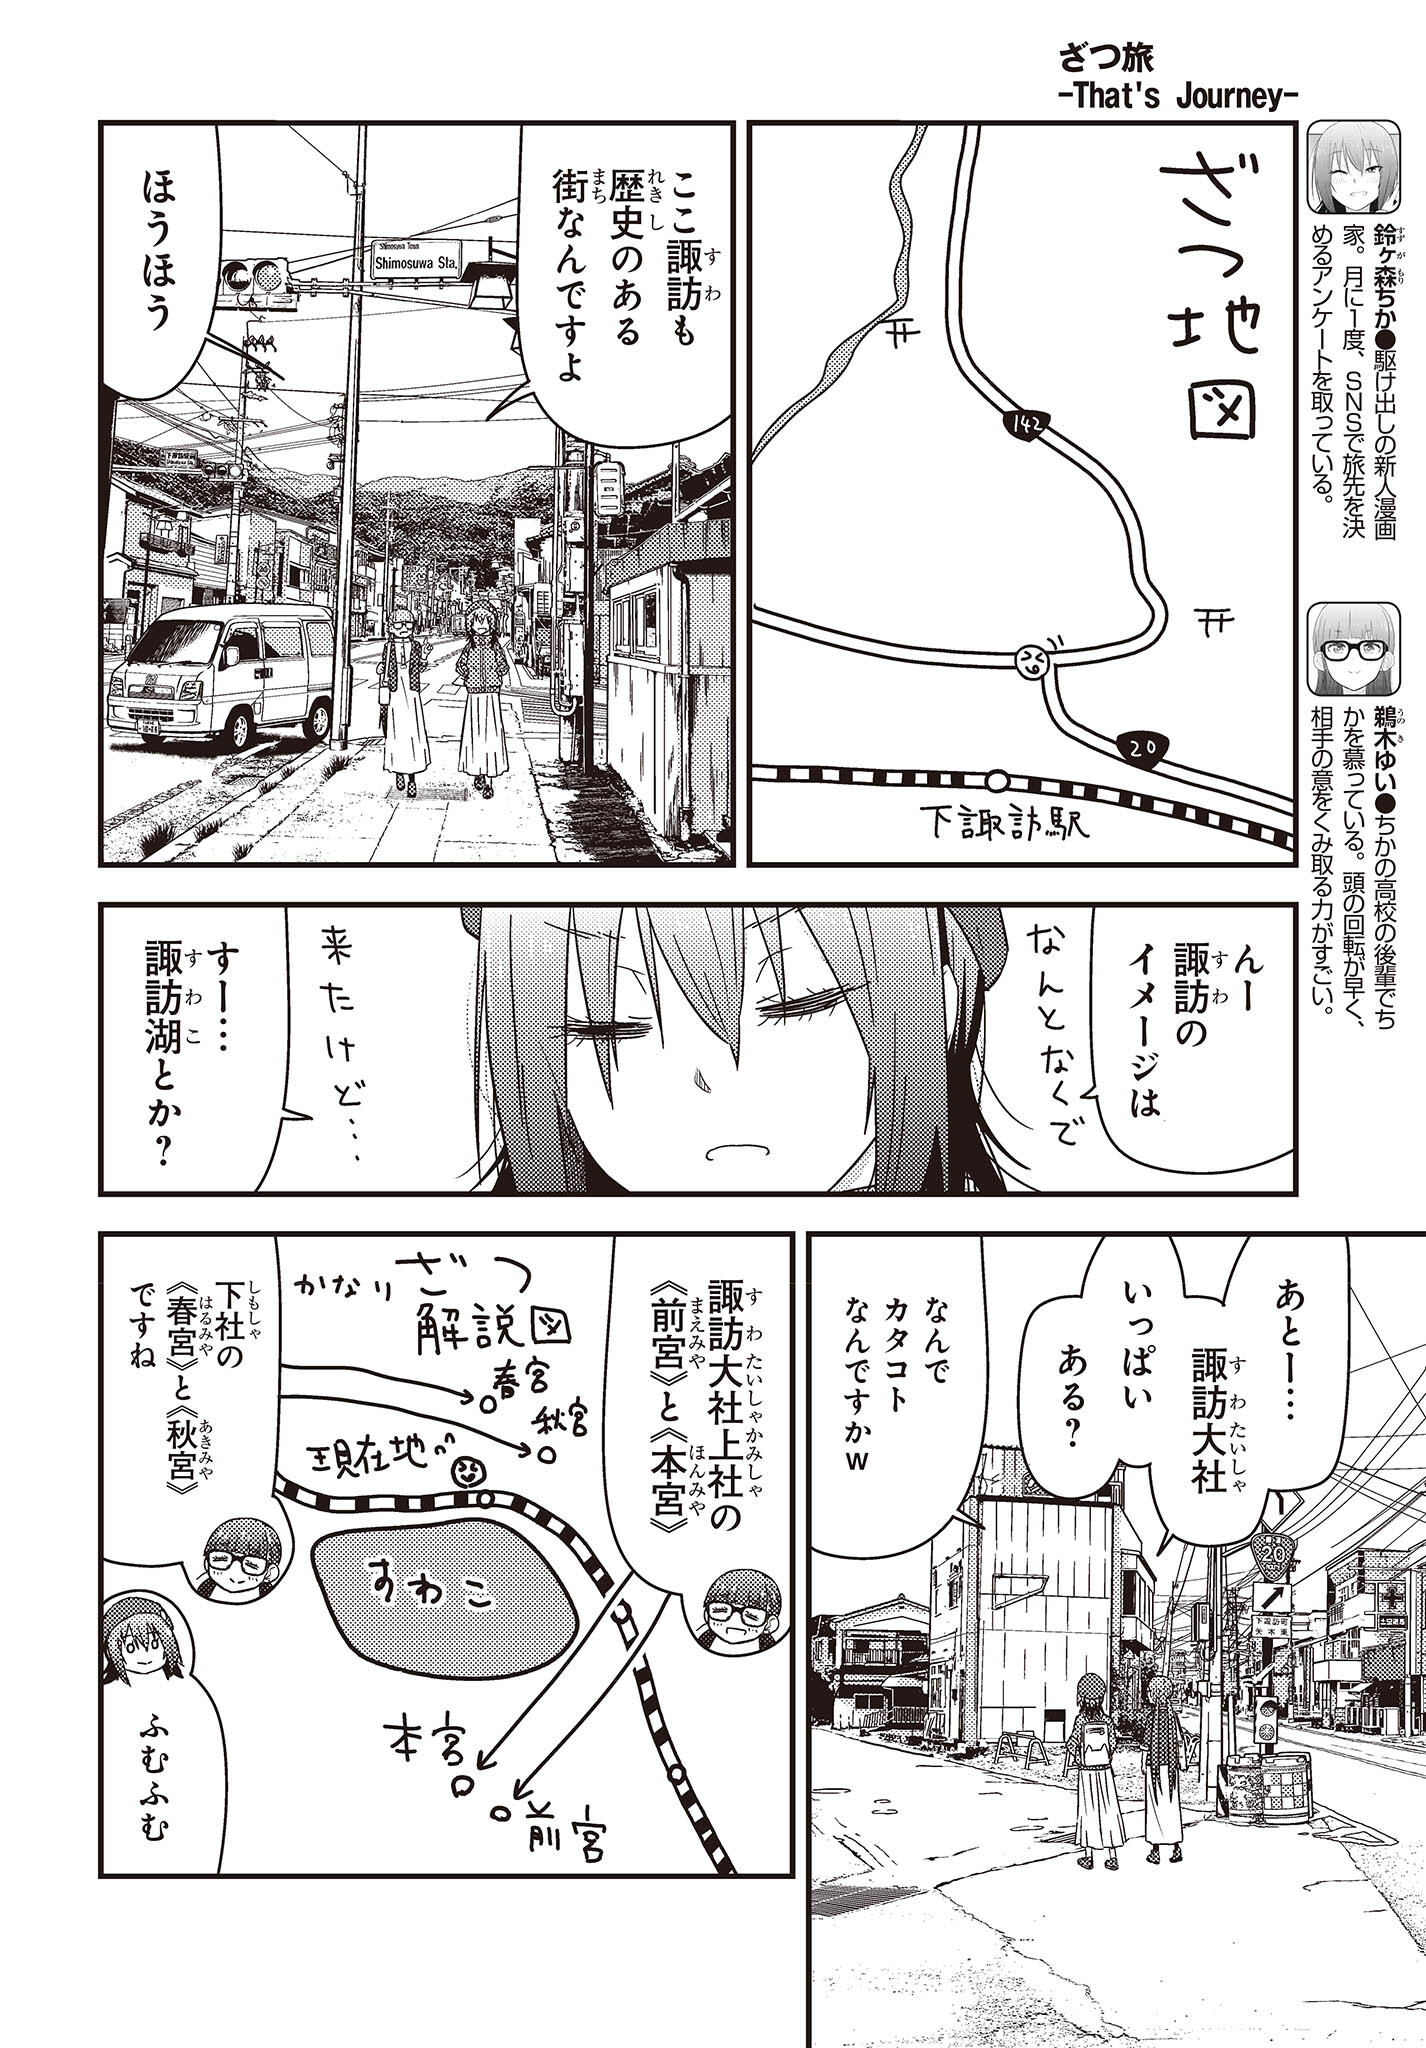 ざつ旅-That’s Journey- 第28話 - Page 4